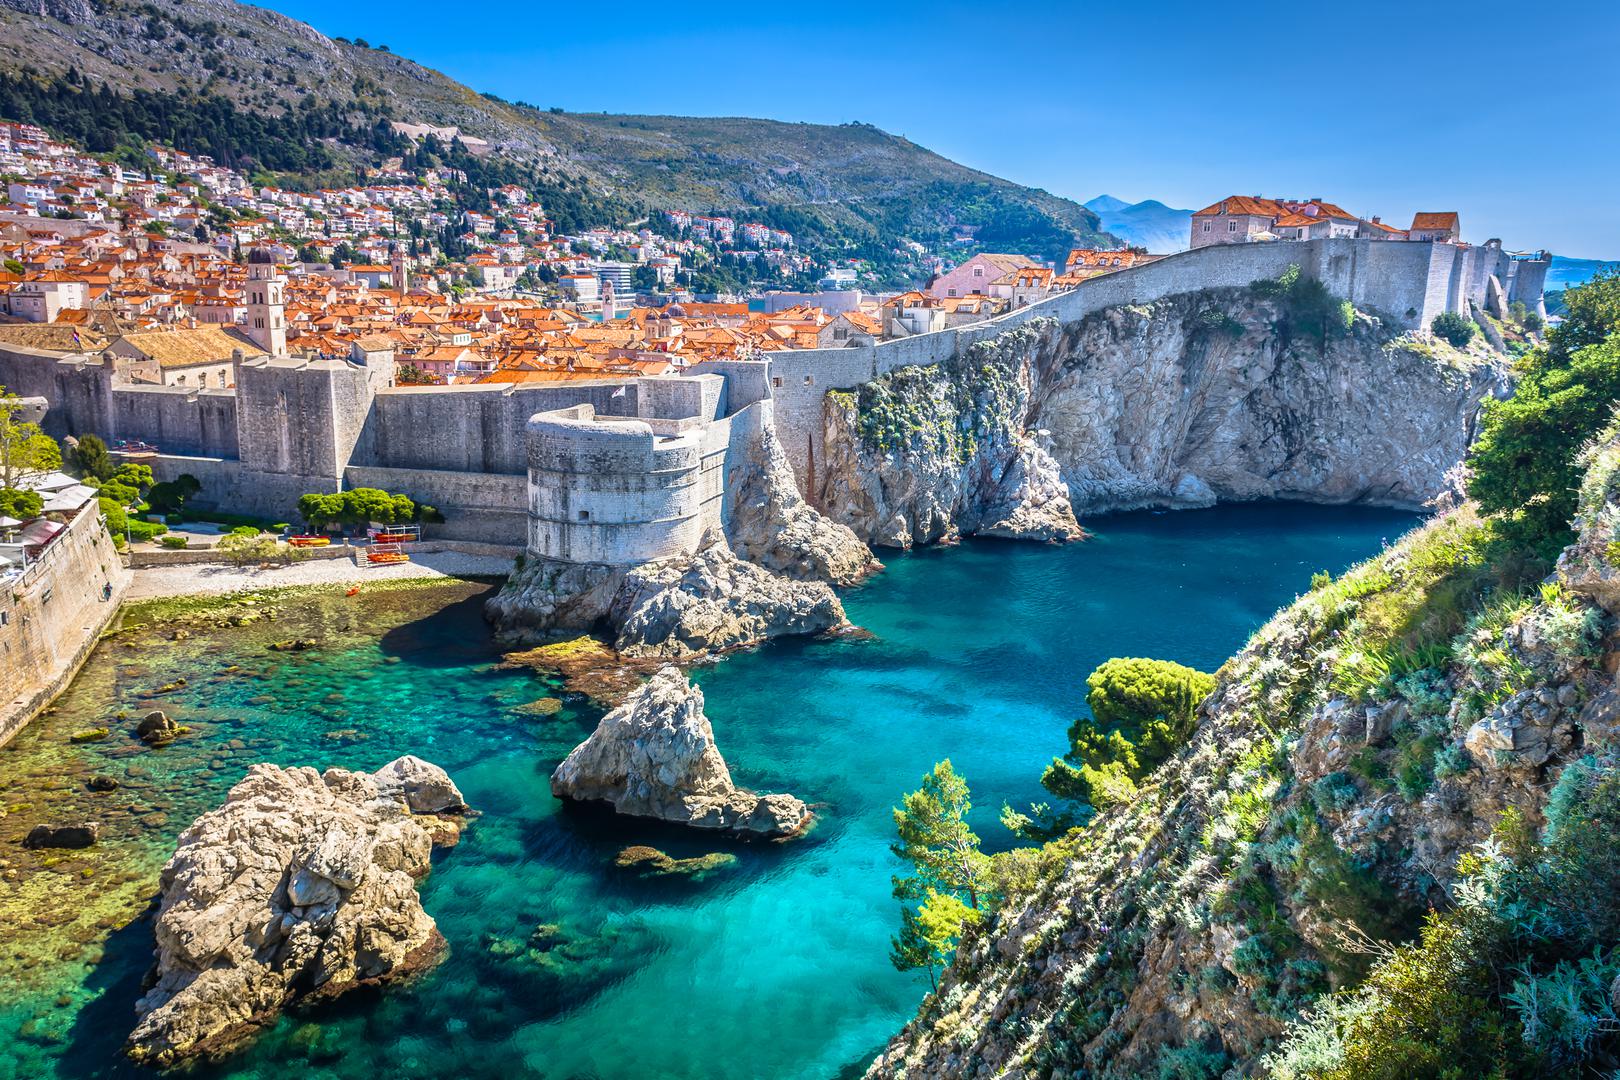 Dubrovnik: Biser Jadrana okružen je masivnim kamenim zidinama iz 16. stoljeća s prekrasnim pogledom na okolne otoke i Stari grad. Skriva prekrasne građevine poput barokne crkve sv. Vlaha, renesansne palače Sponza, gotičke Kneževe palače te slikovitog Straduna s brojnim trgovinama i restoranima.